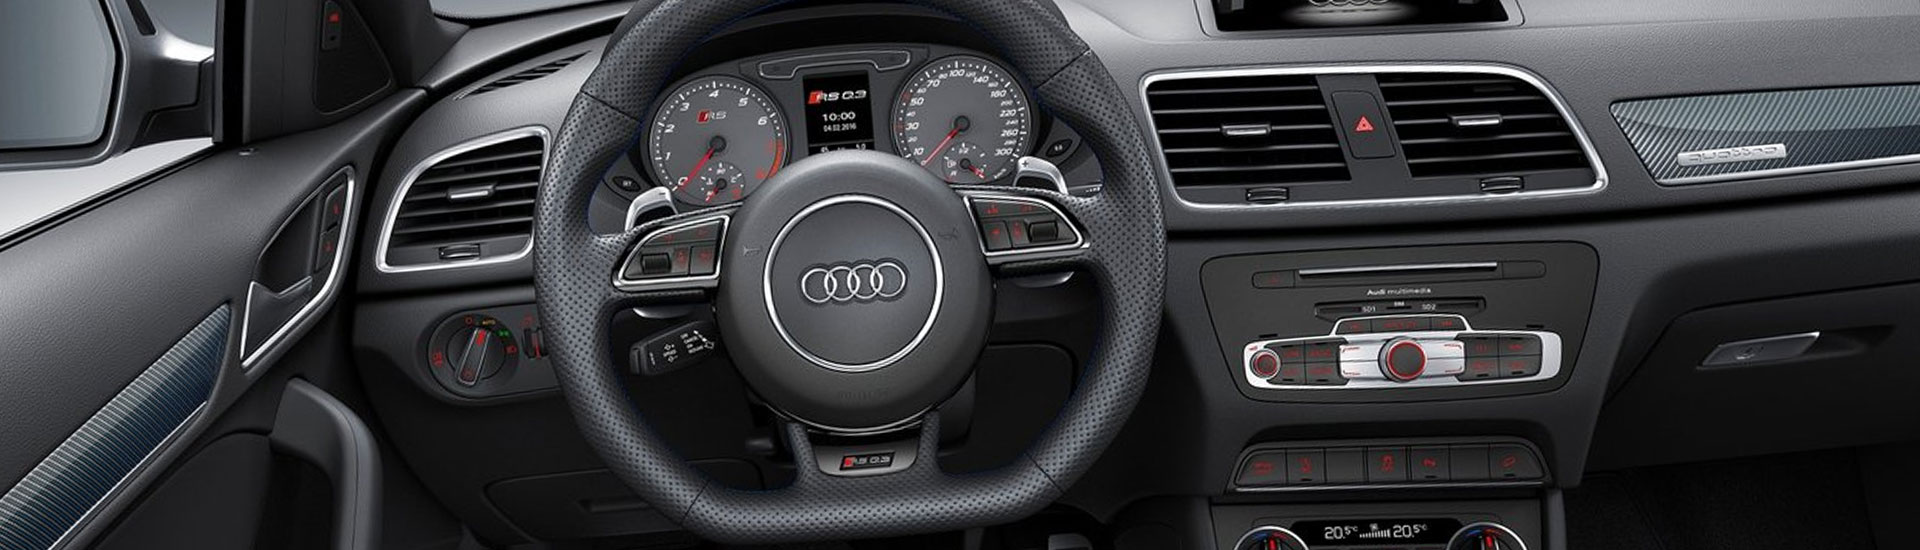 Audi Q3 Custom Dash Kits